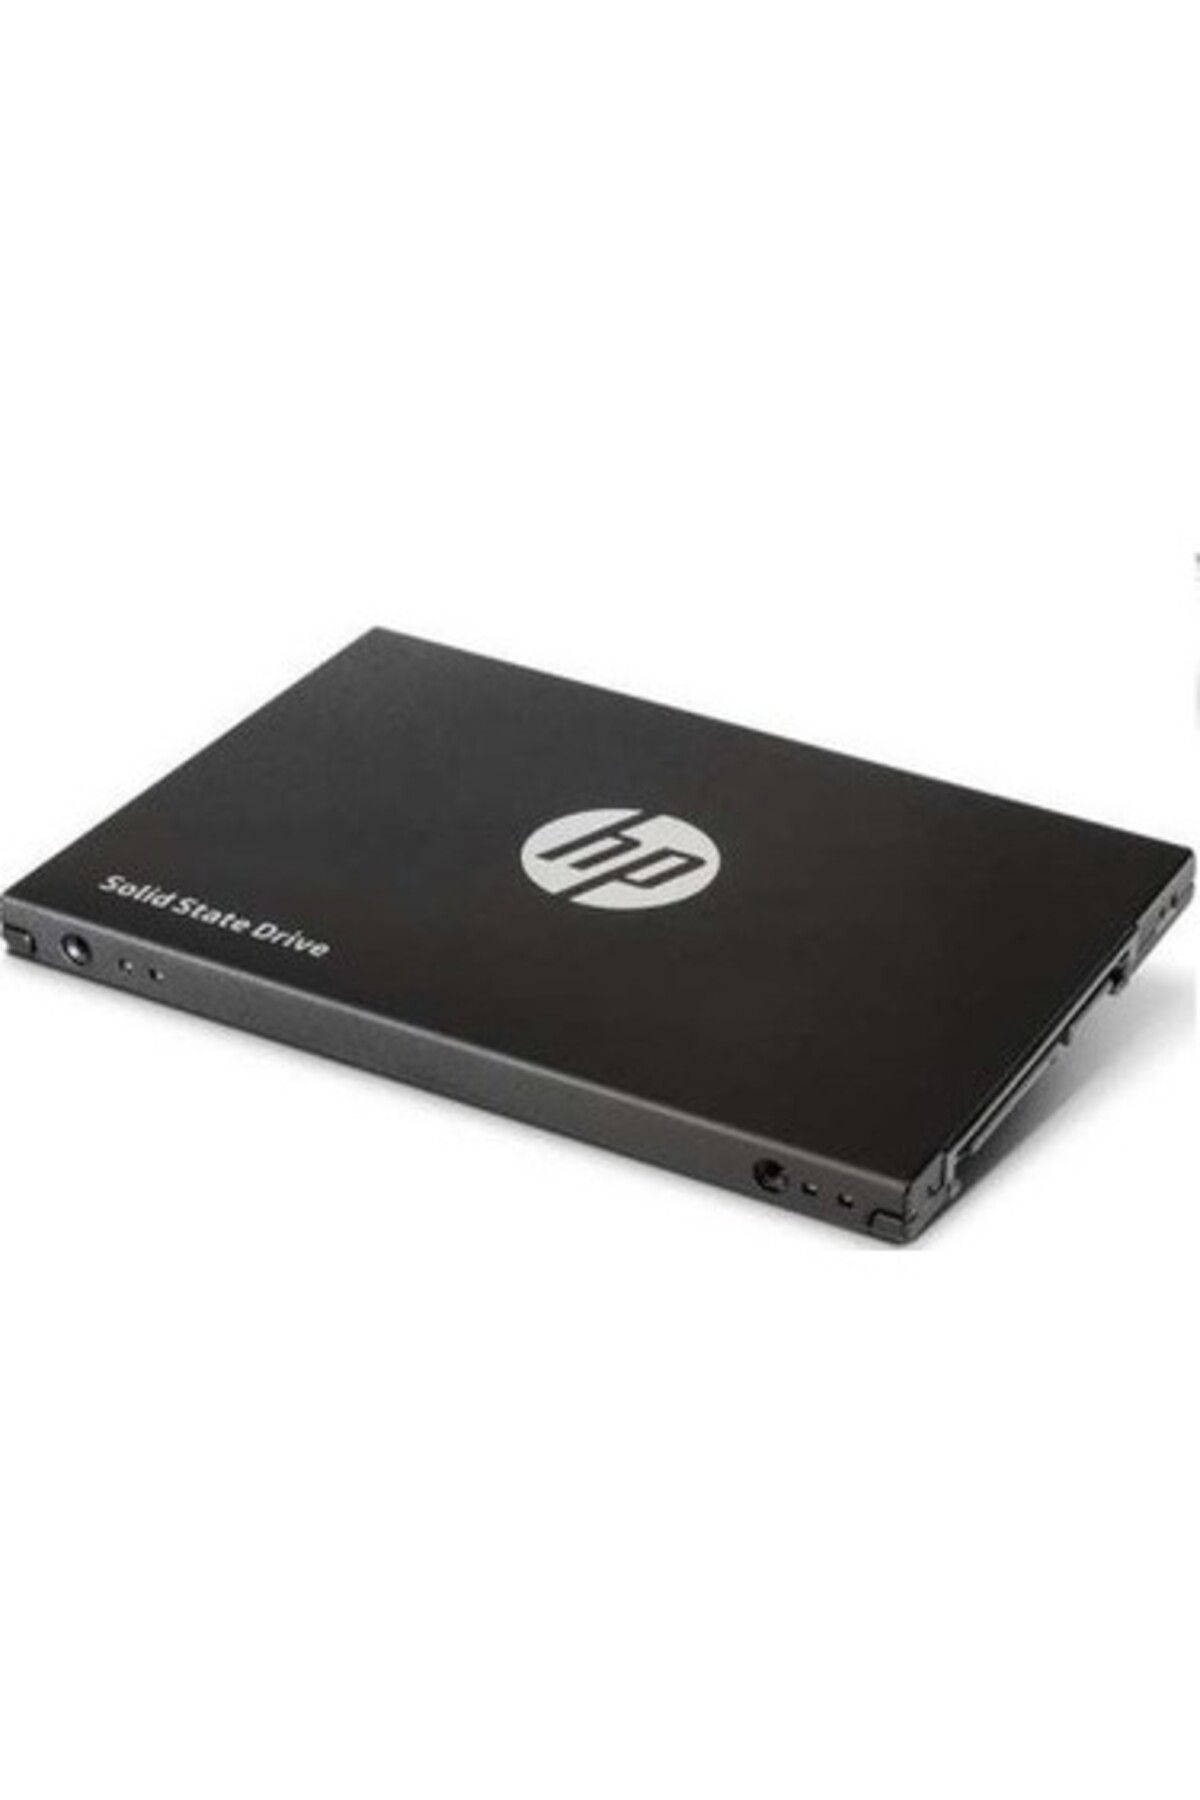 HP S650 2.5 480Gb Sata Iıı 560/490 Ssd 345M9Aa -N